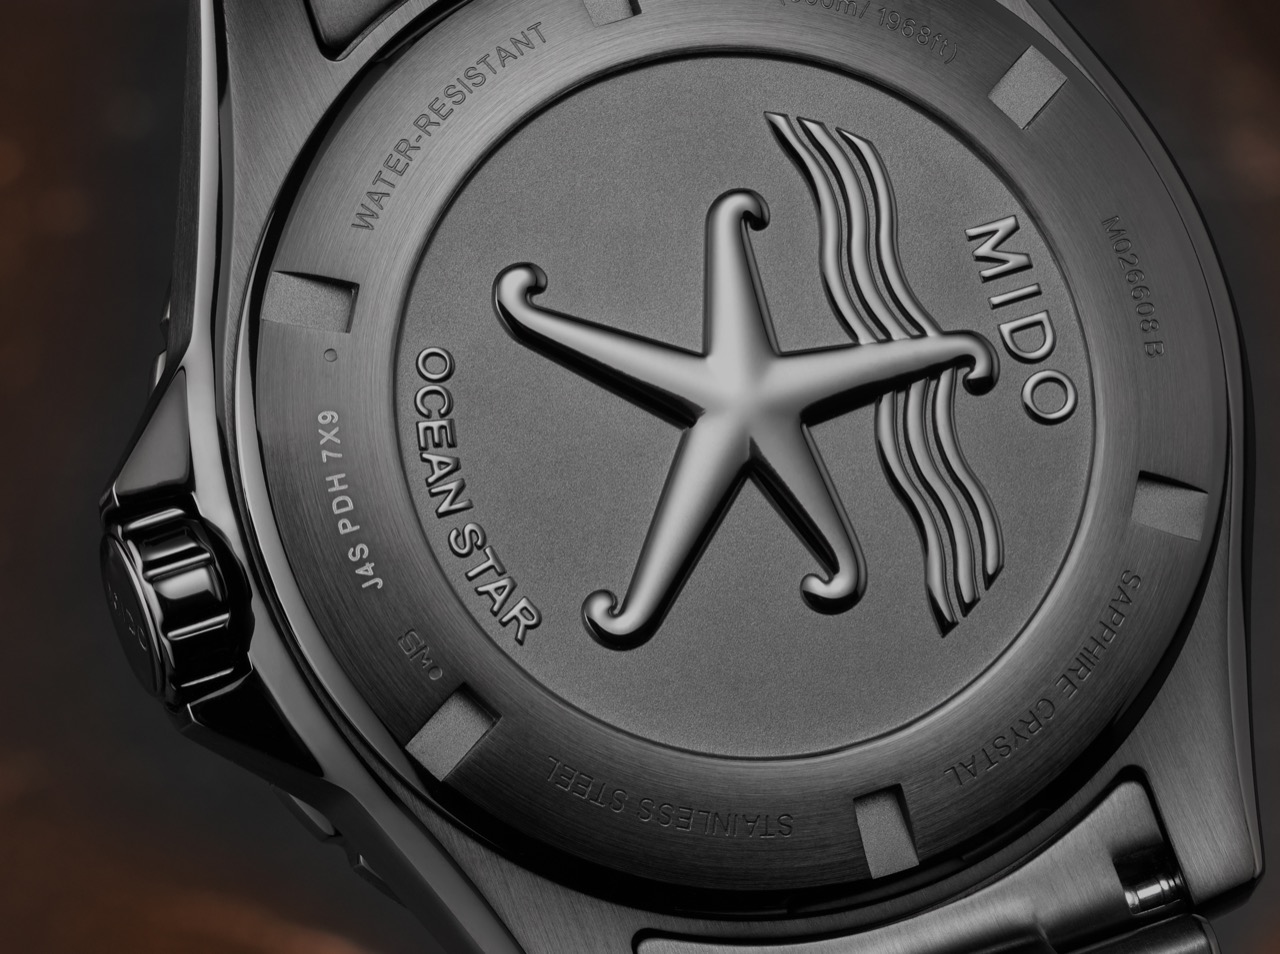 Mido Ocean Star 600 Chronometer Black DLC Special Edition back